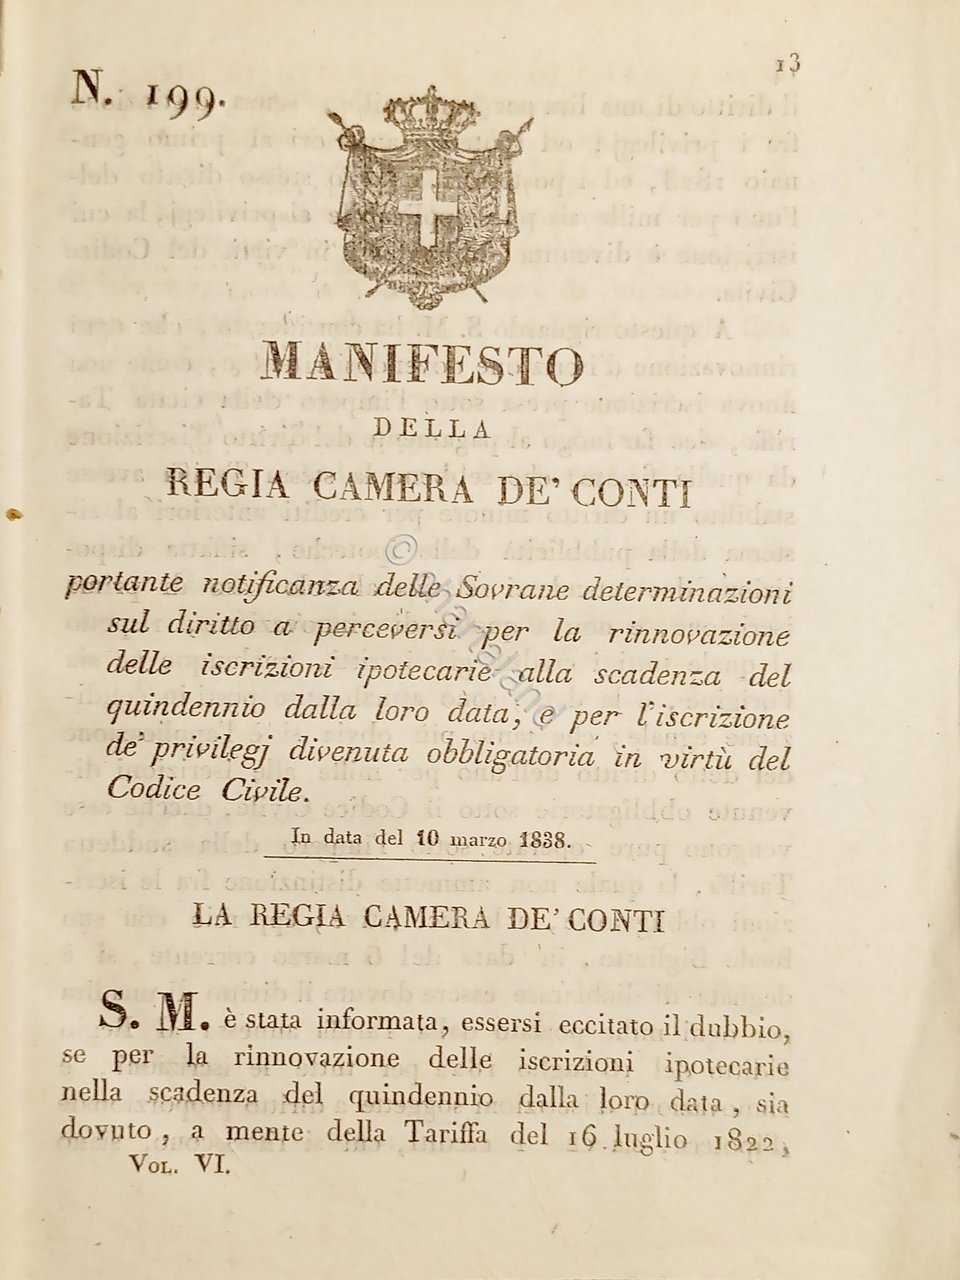 Manifesto Regia Camera De Conti - Iscrizioni ipotecarie scadenza quindennio …